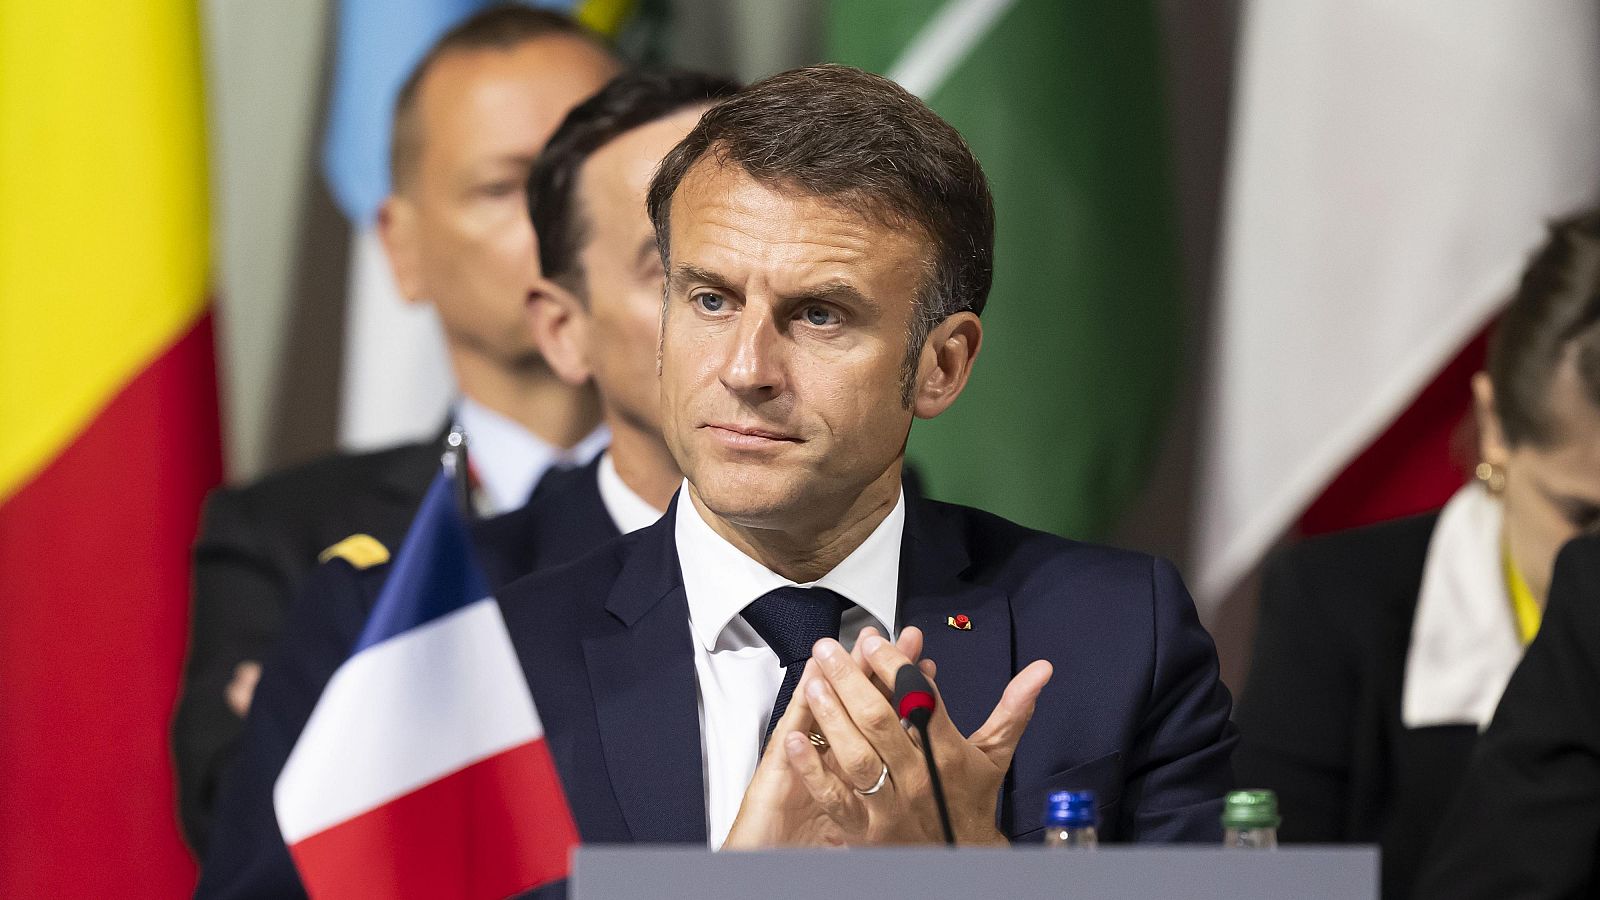 El Gobierno de Macron se lanza a por las legislativas con candidaturas de 24 de sus miembros